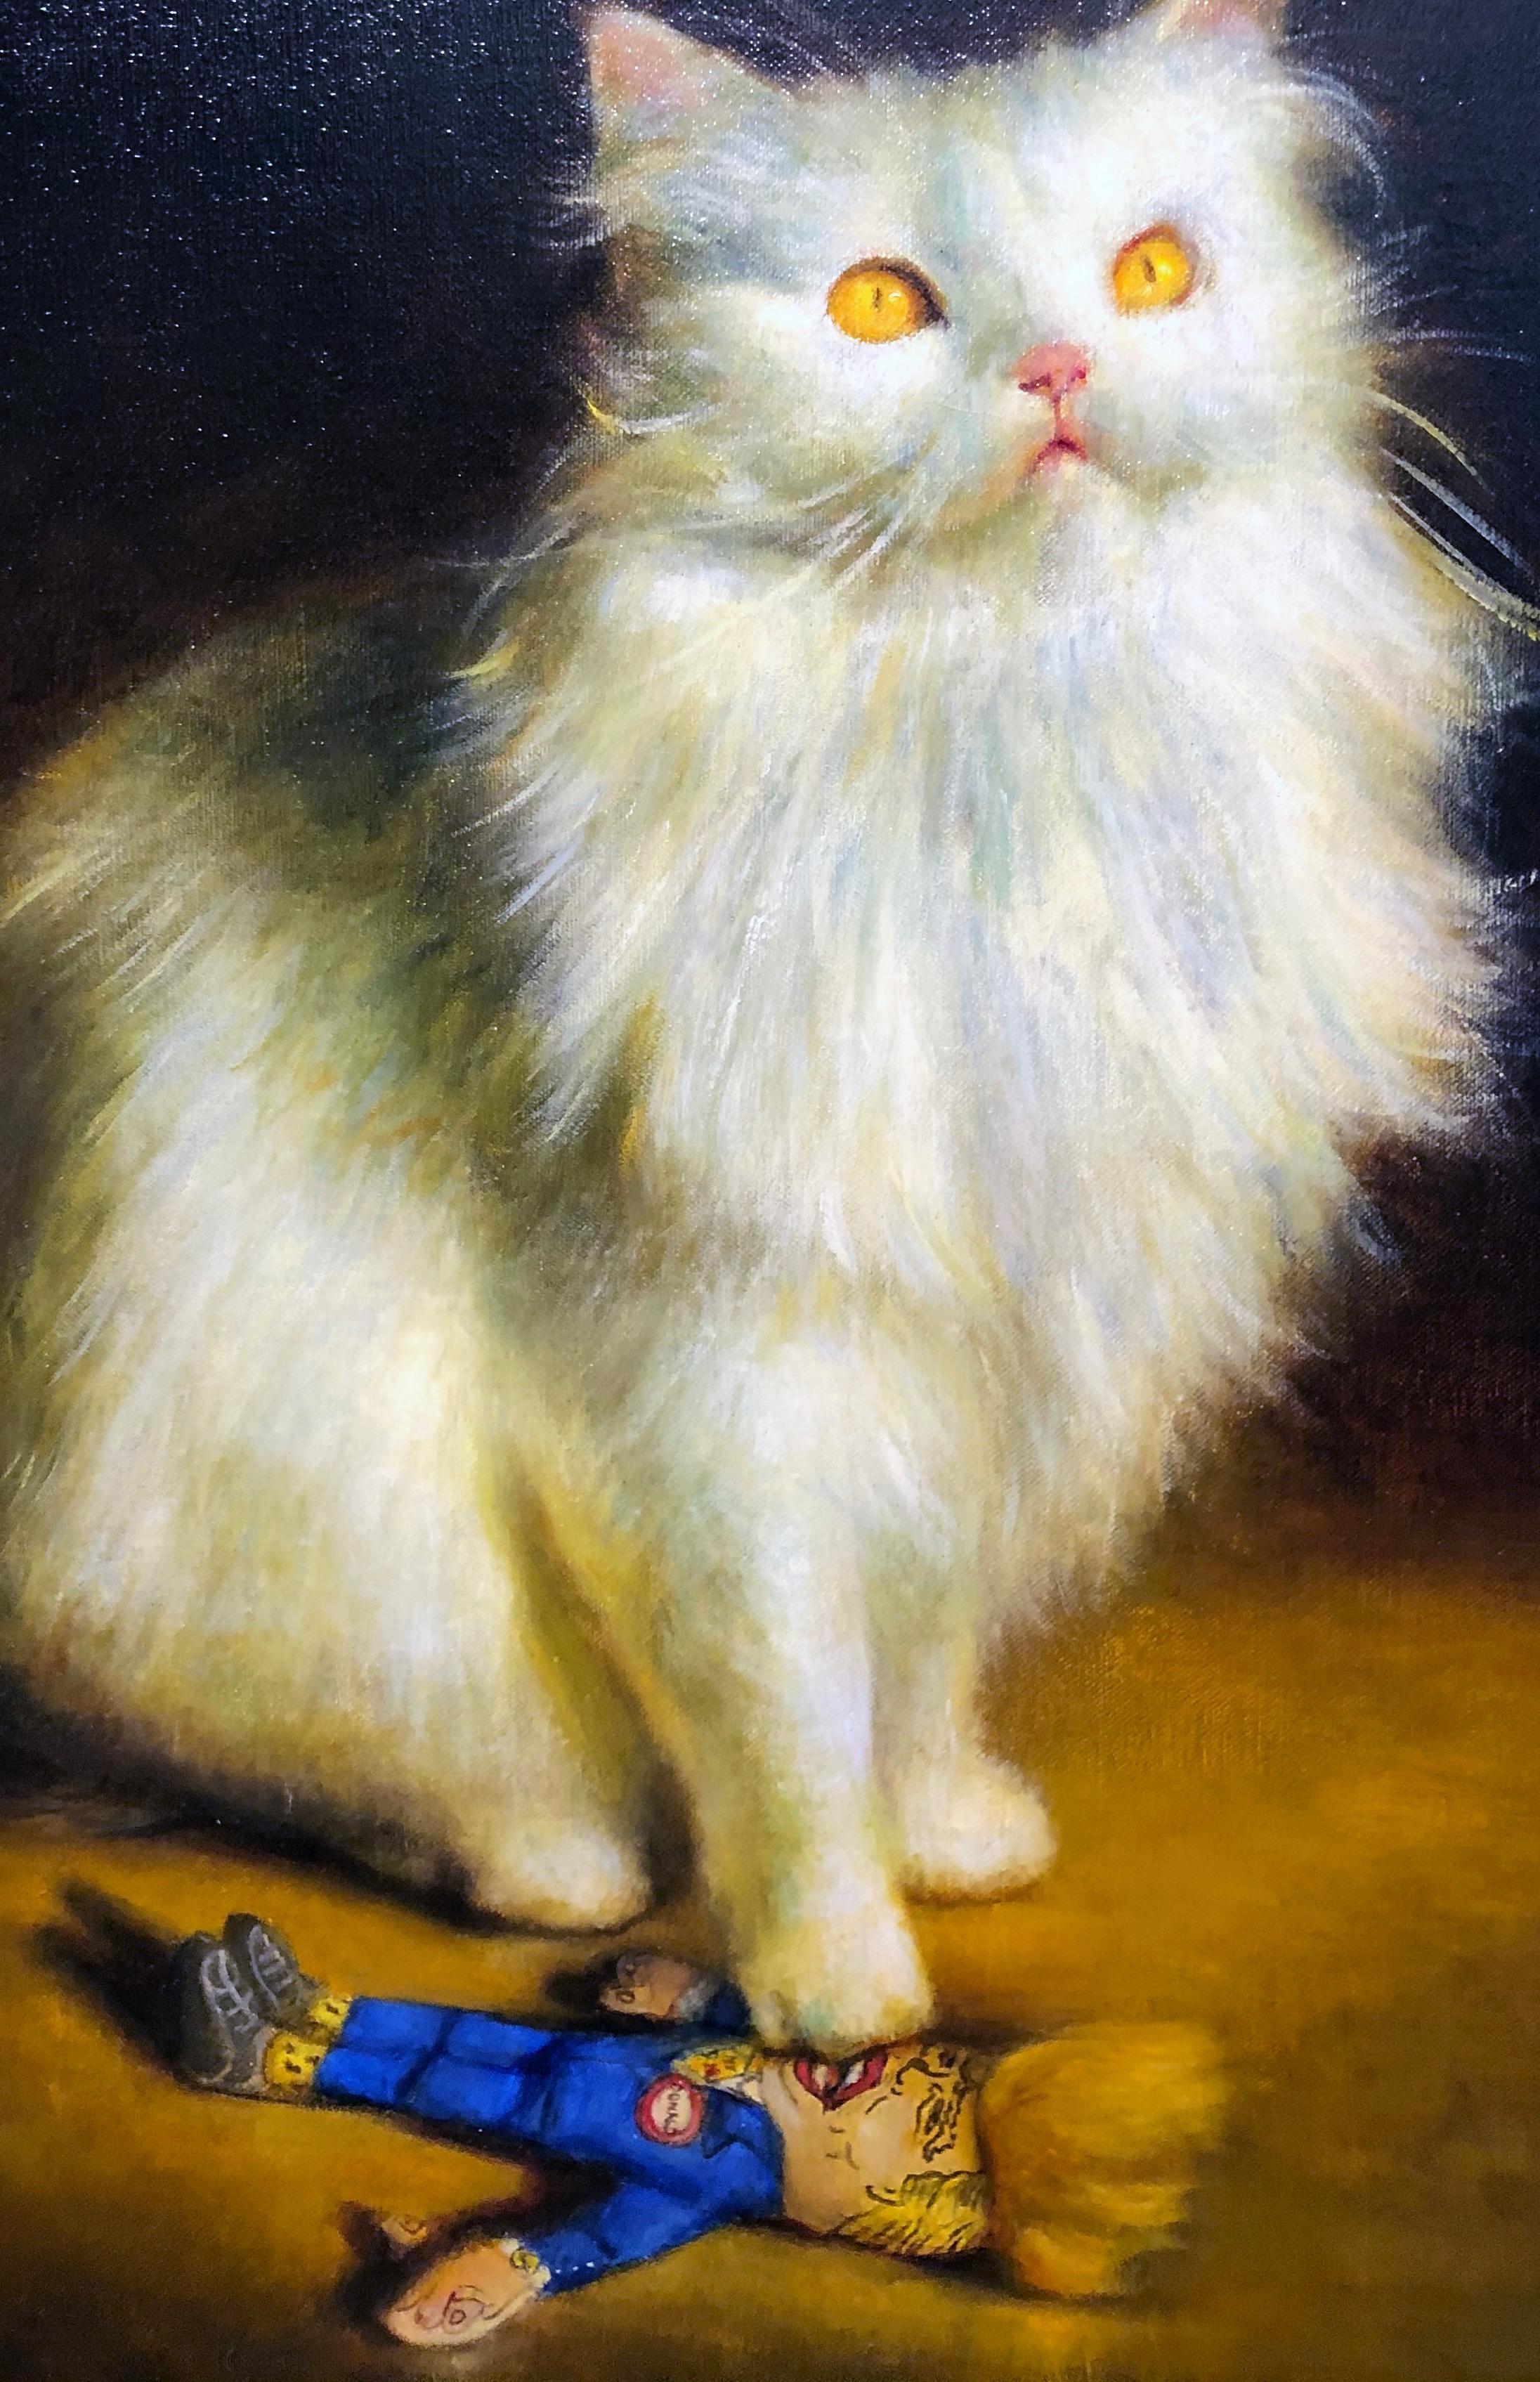 Ce chat persan blanc regarde vers le haut avec ses yeux jaunes fixés sur un objet inconnu hors du champ de vision du spectateur.  Mais ce qui retient l'attention, c'est l'objet que le chat a pris sous sa patte - une effigie du 45e président. 